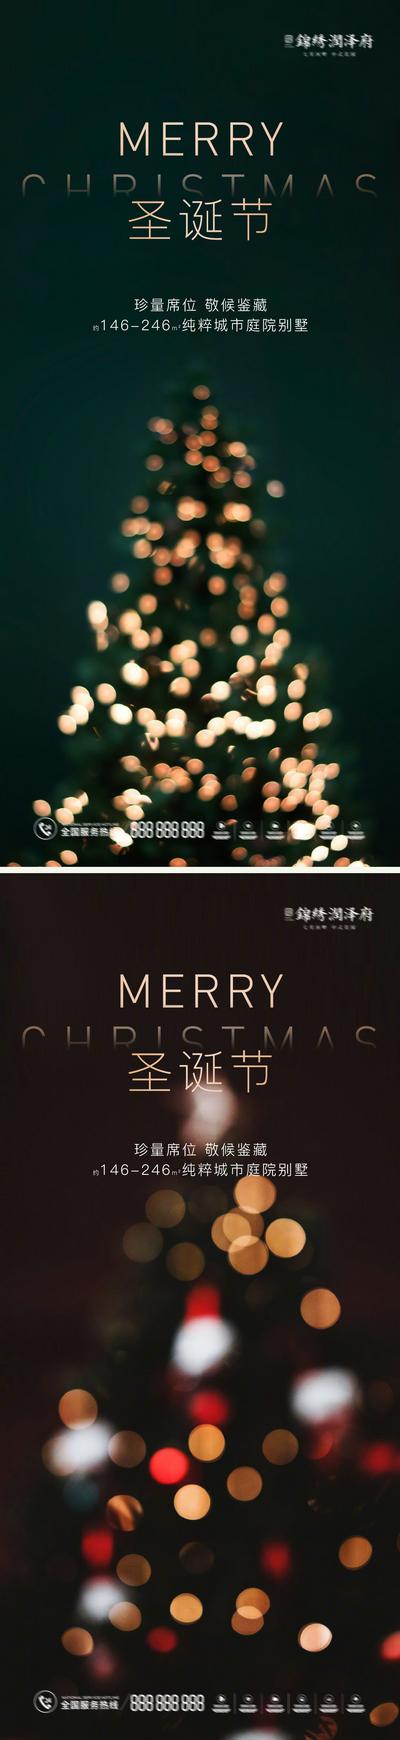 【南门网】海报 西方节日 圣诞节 平安夜 圣诞树 光晕 简约